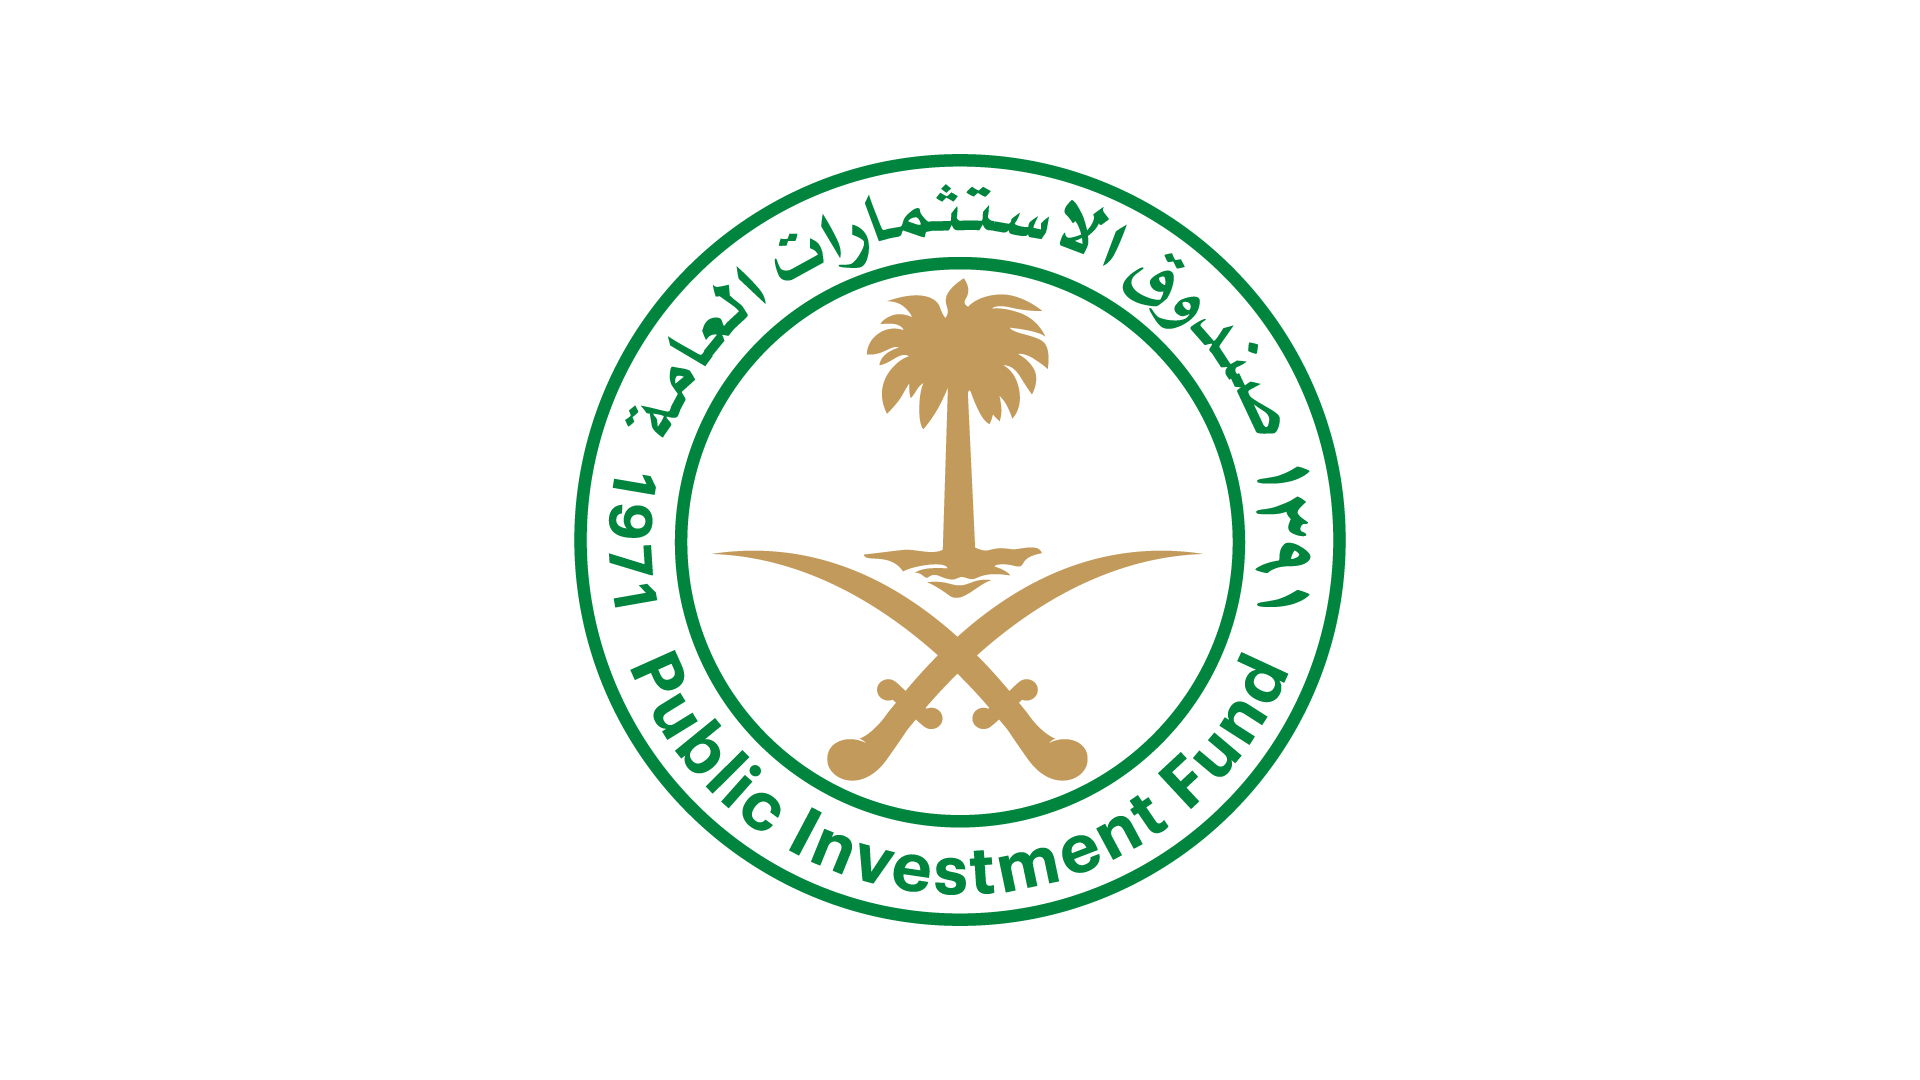 Saudi Arabia Public Investment Fund Logo (PIF)